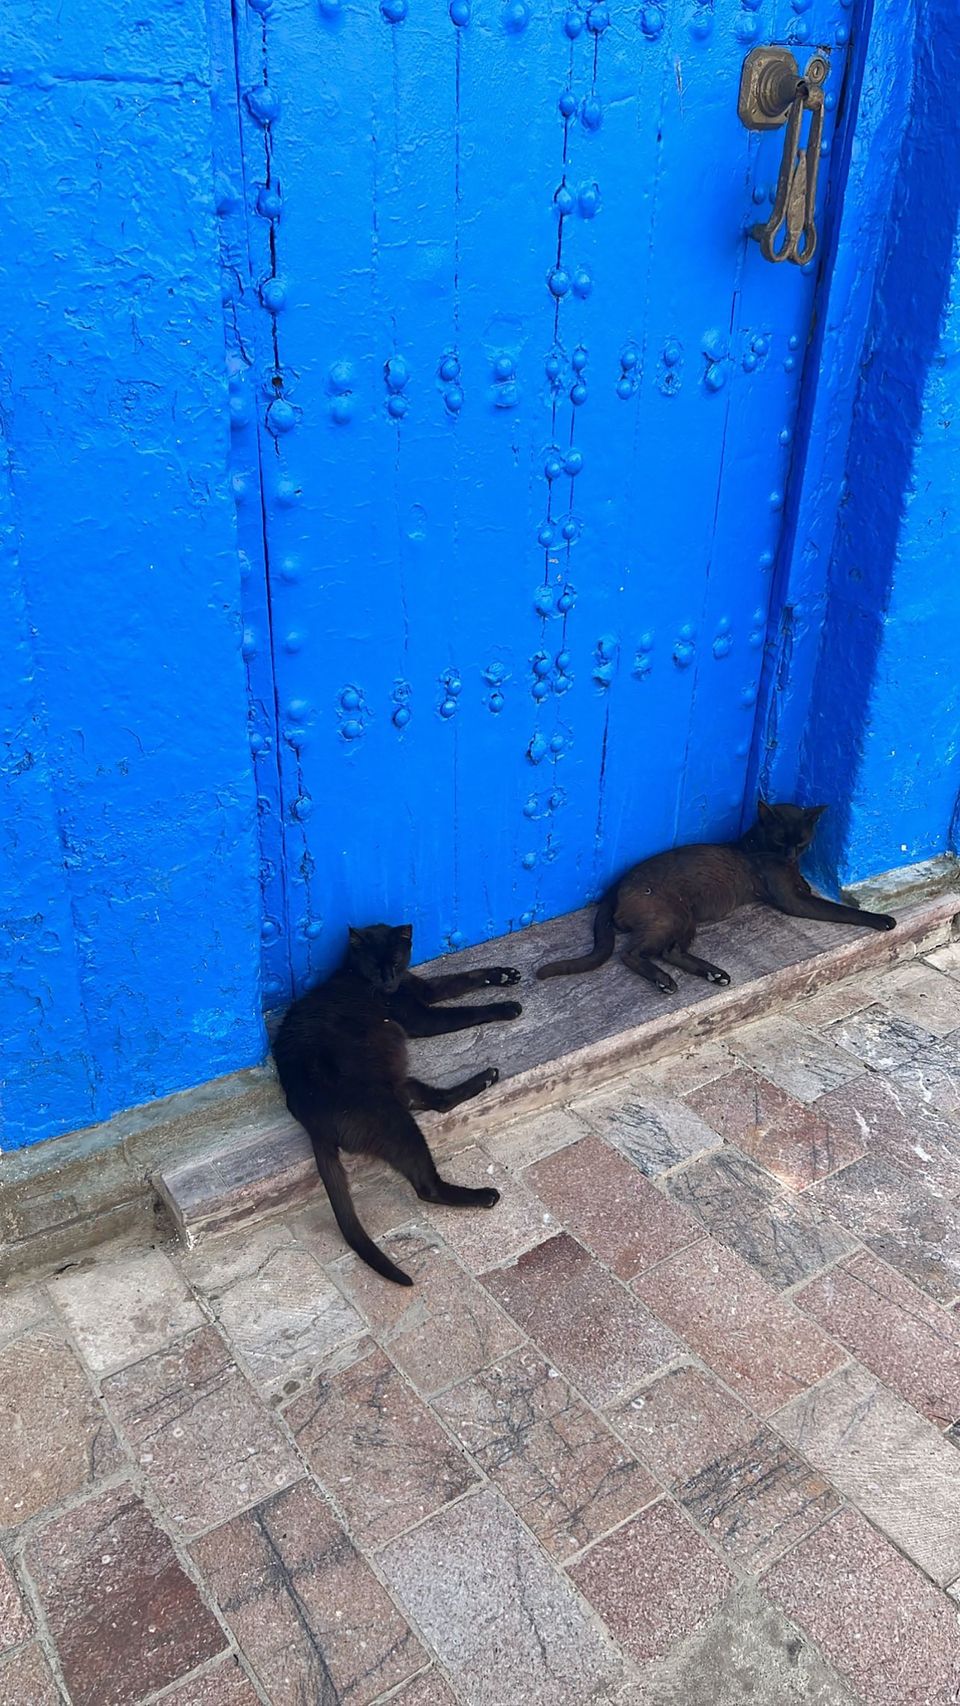 Cats in front of blue door in Morocco